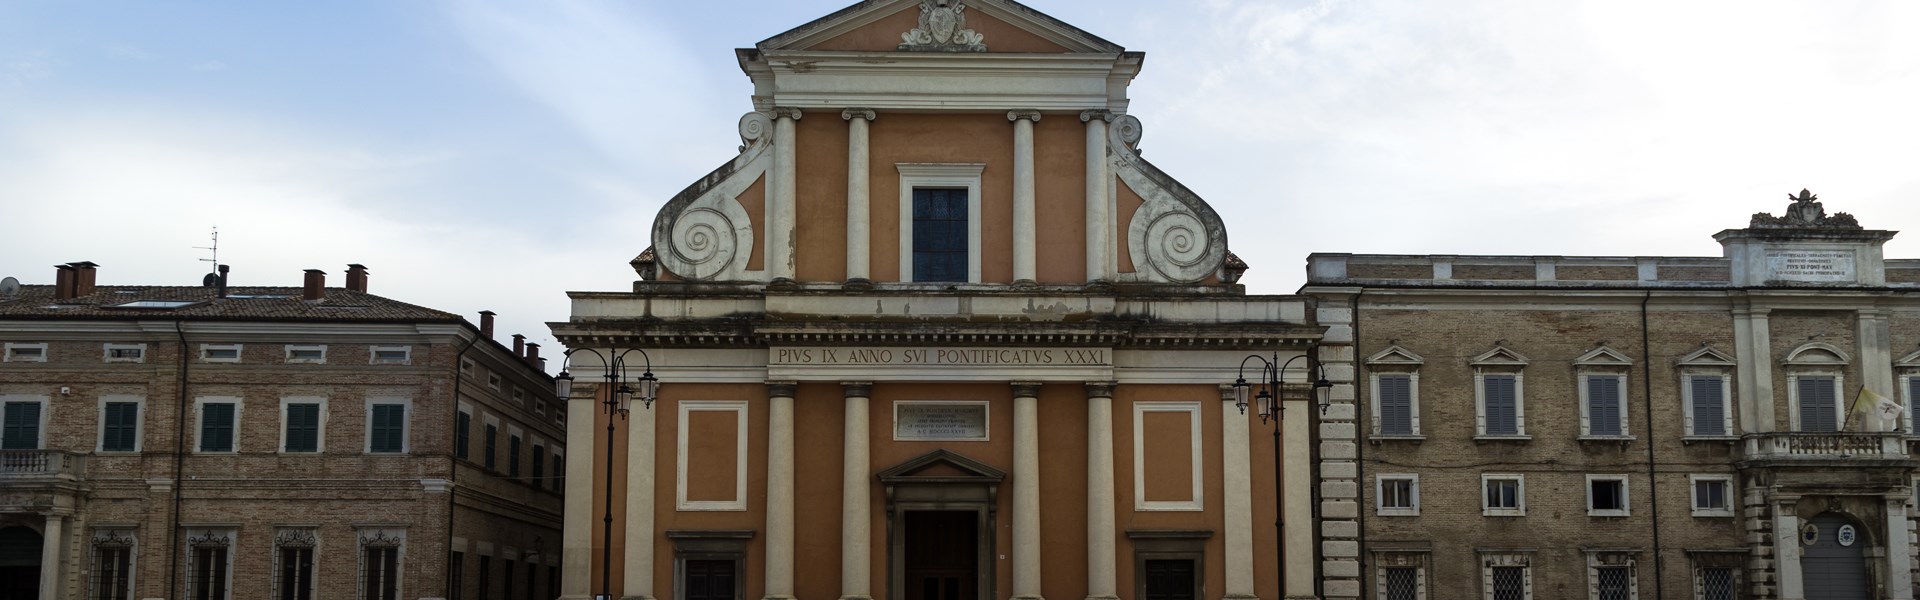 Senigallia - Cattedrale di S. Pietro Apostolo